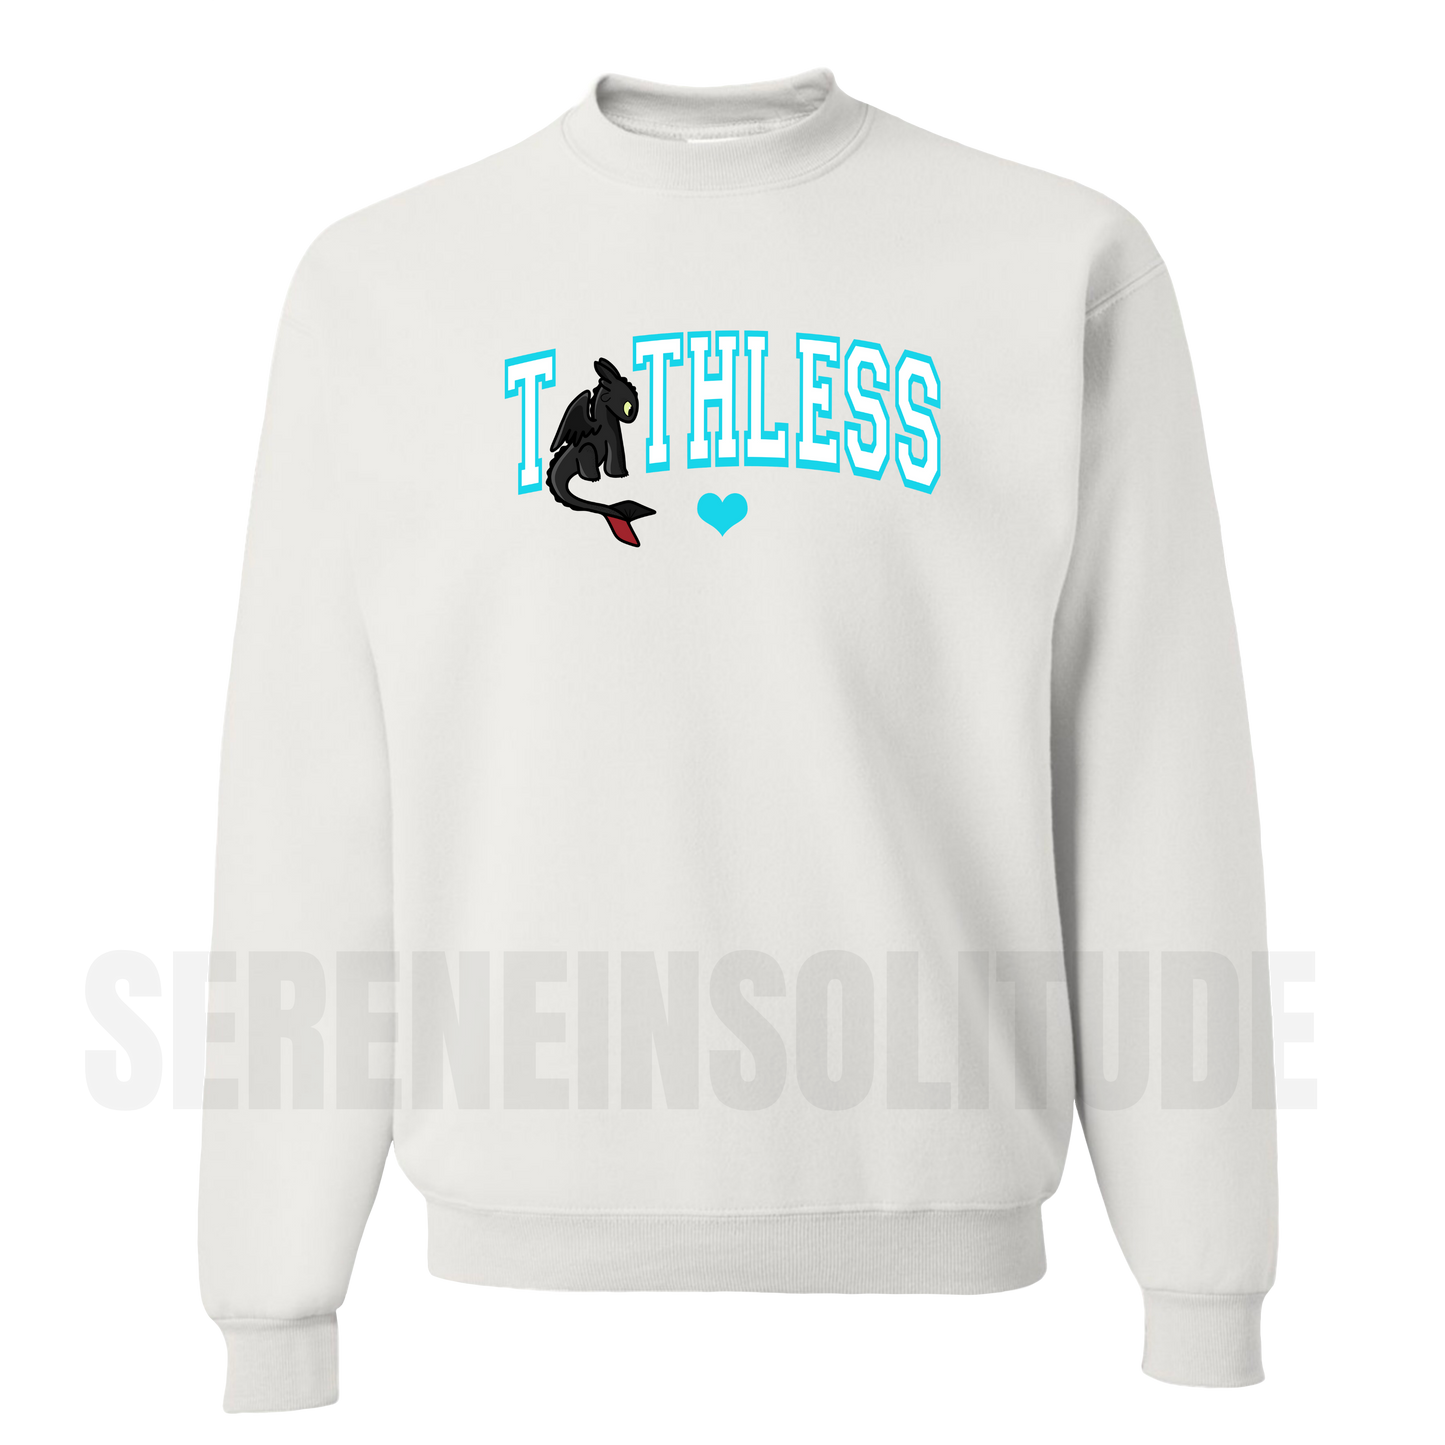 Toothless Sweatshirt